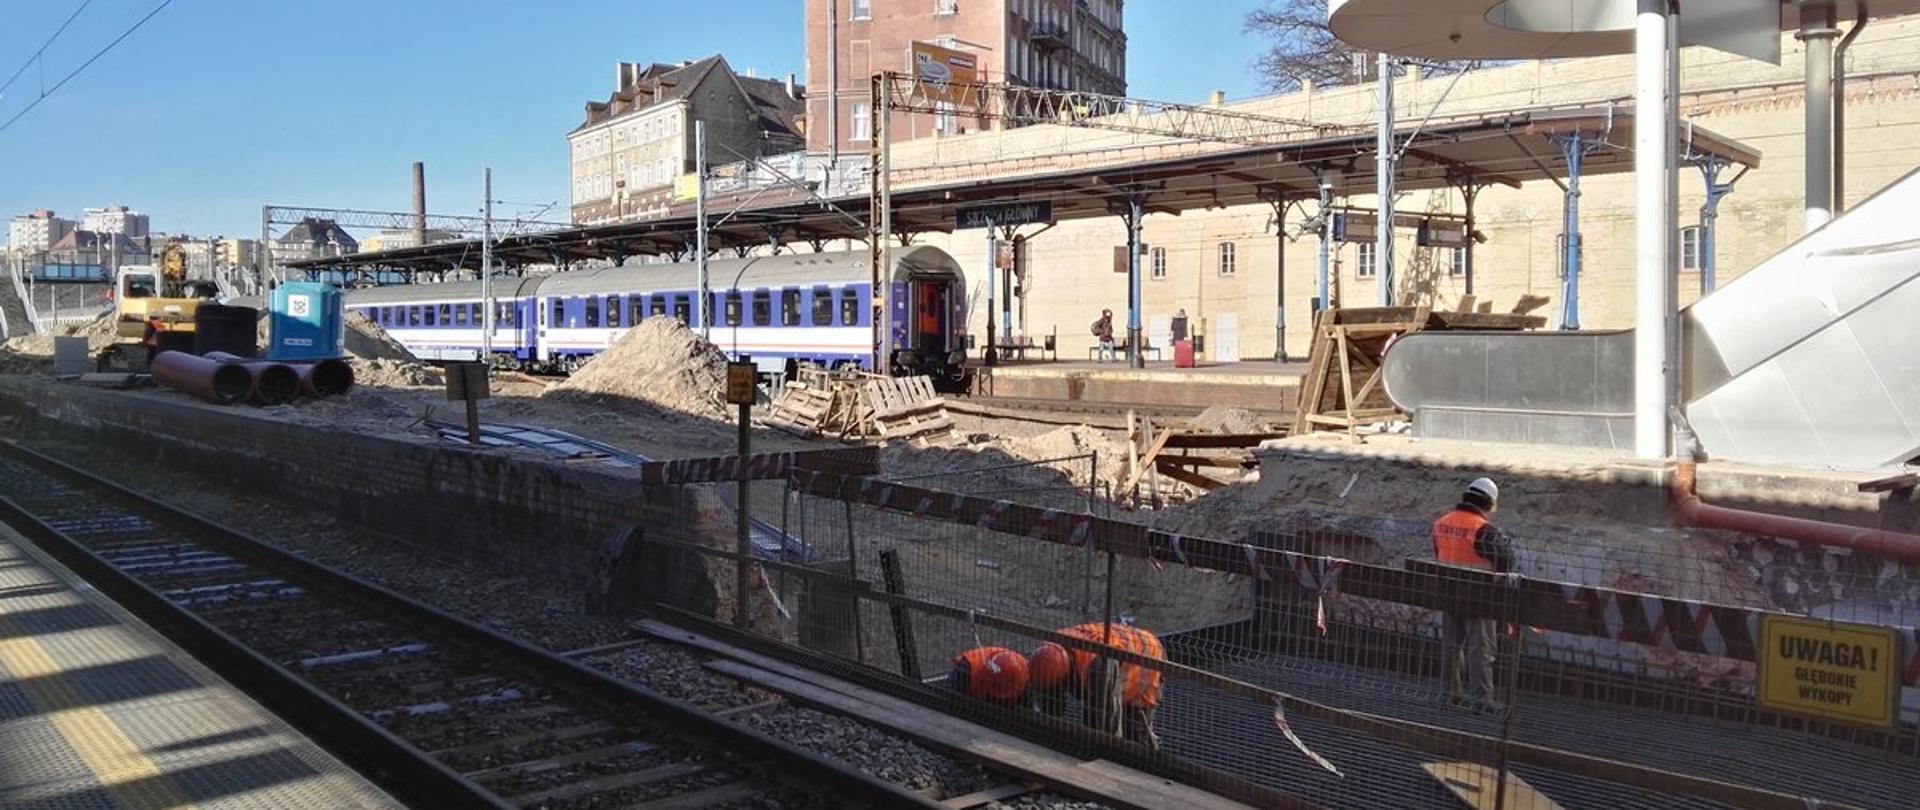 Na zdjęciu widać pracowników na budowie peronu na stacji kolejowej. Po lewej stronie widoczne są maszyny budowlane